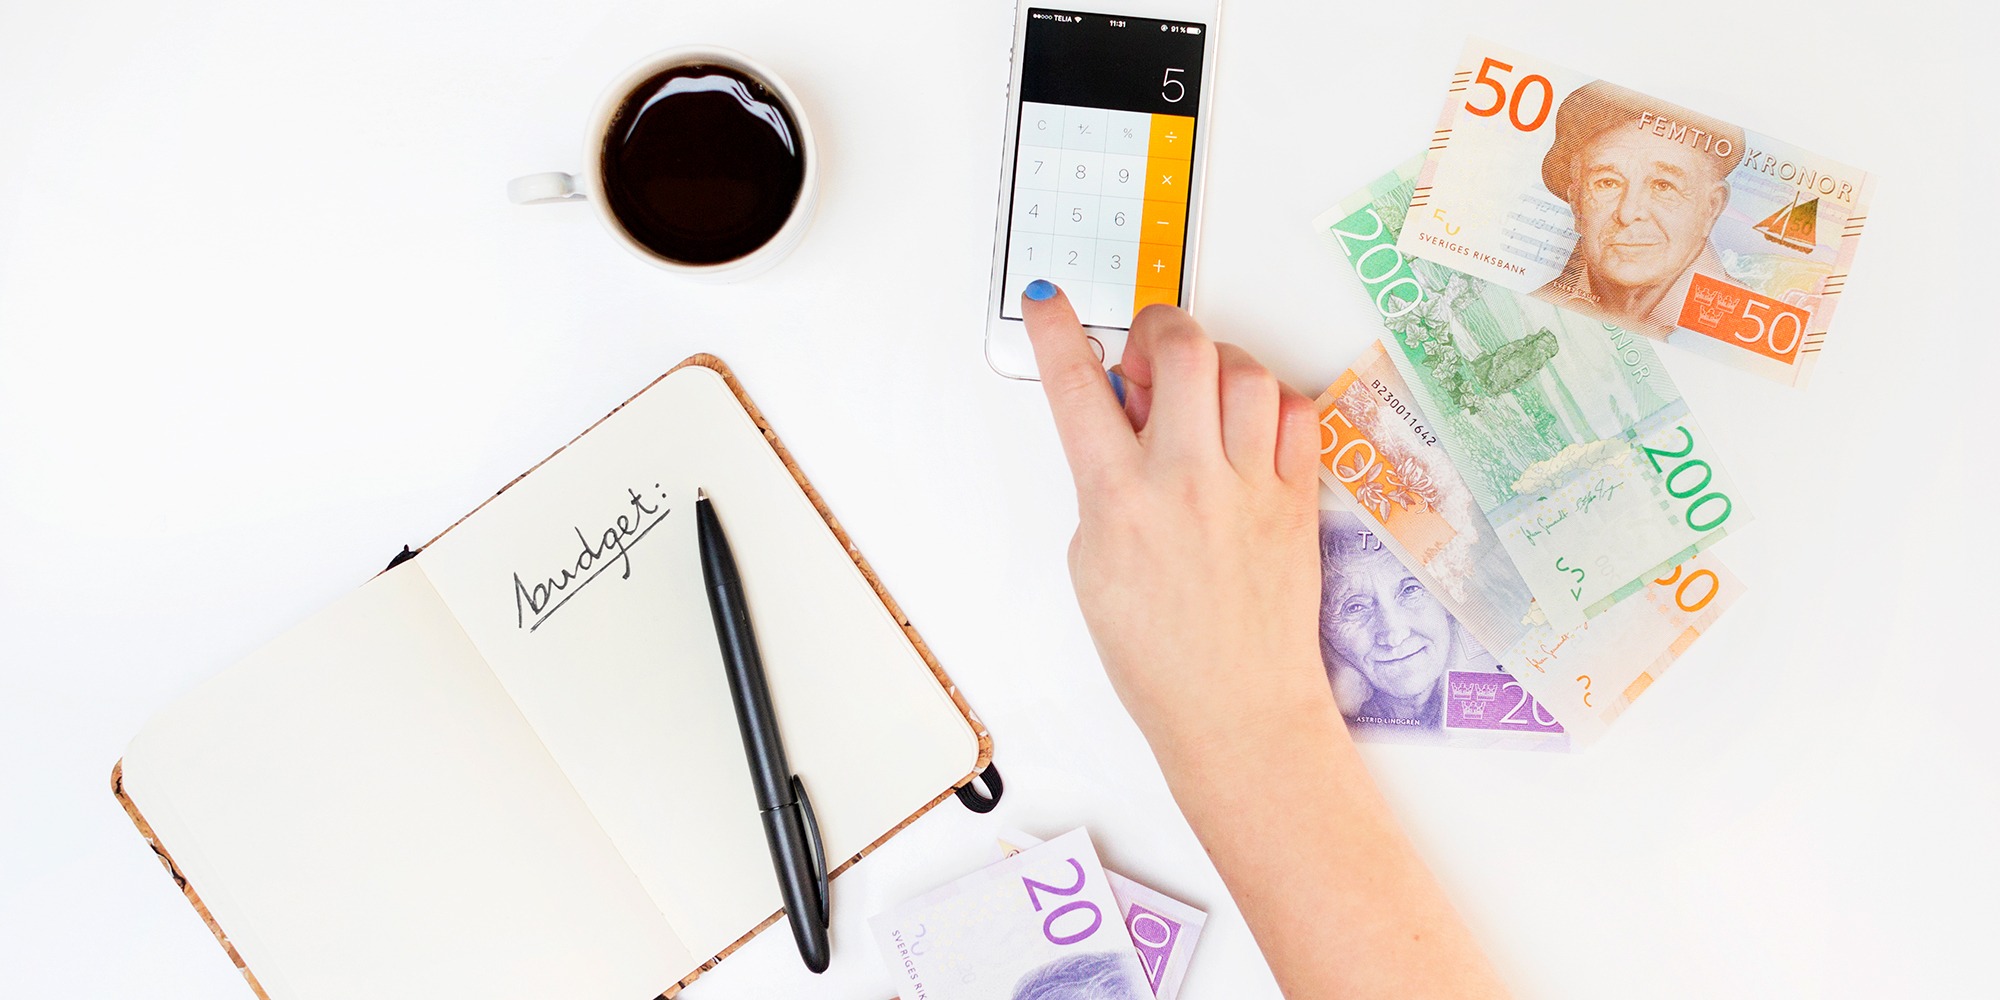 arrangerad bild mot vit bakgrund med pengar, en hand som pekar på en miniräknare, ett anteckningsblock och en kopp kaffe. Allt sett ovanifrån.